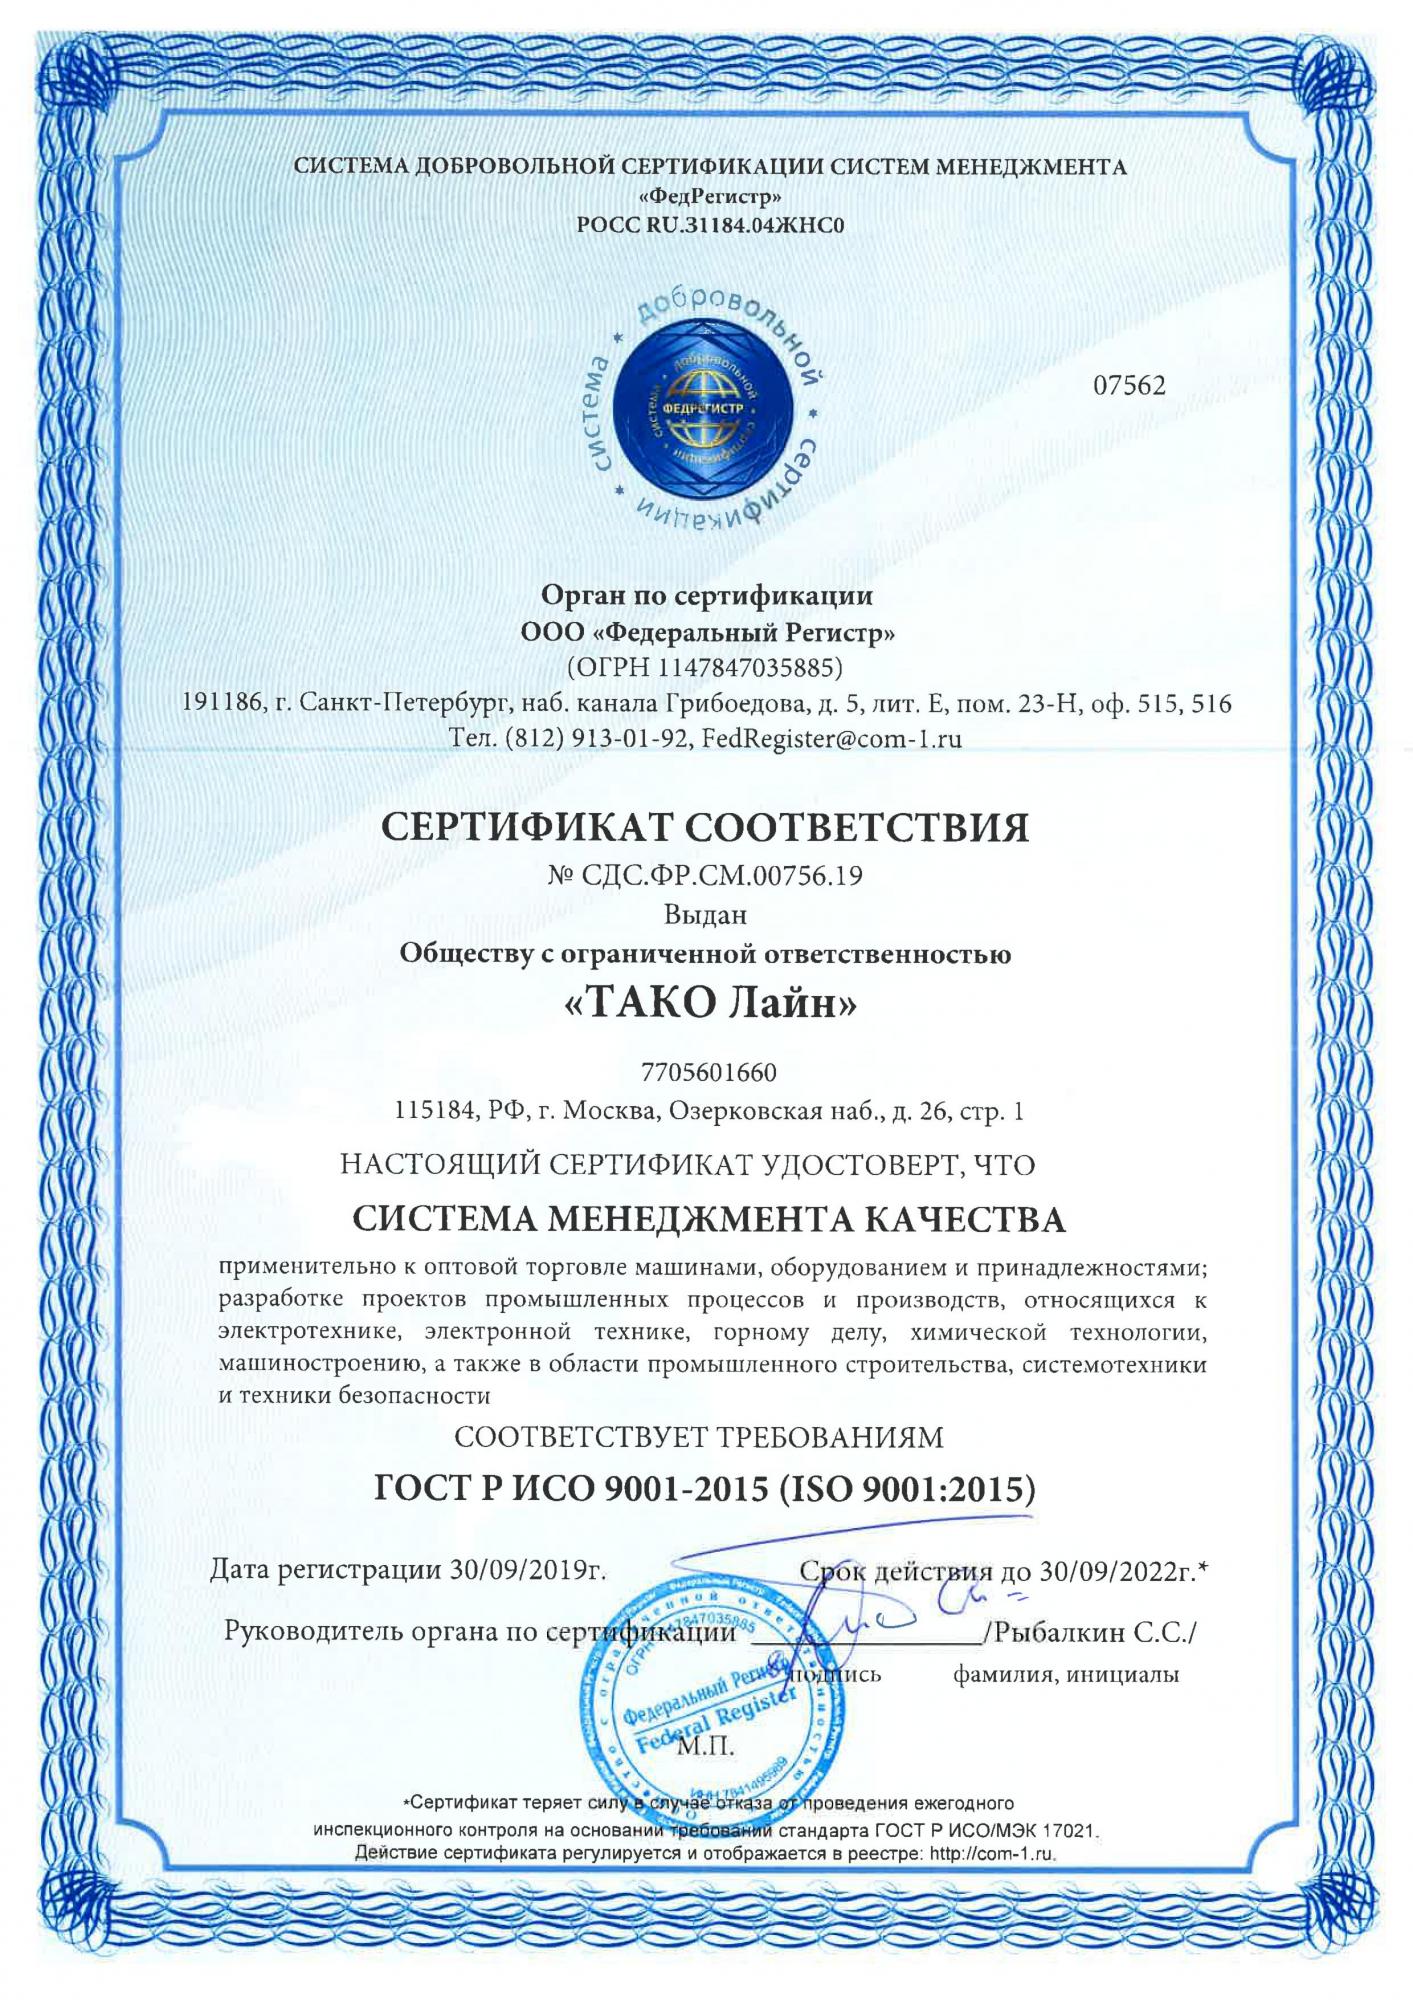 Компания ТАКО Лайн получила сертификат соответствия ISO 9001:2015 